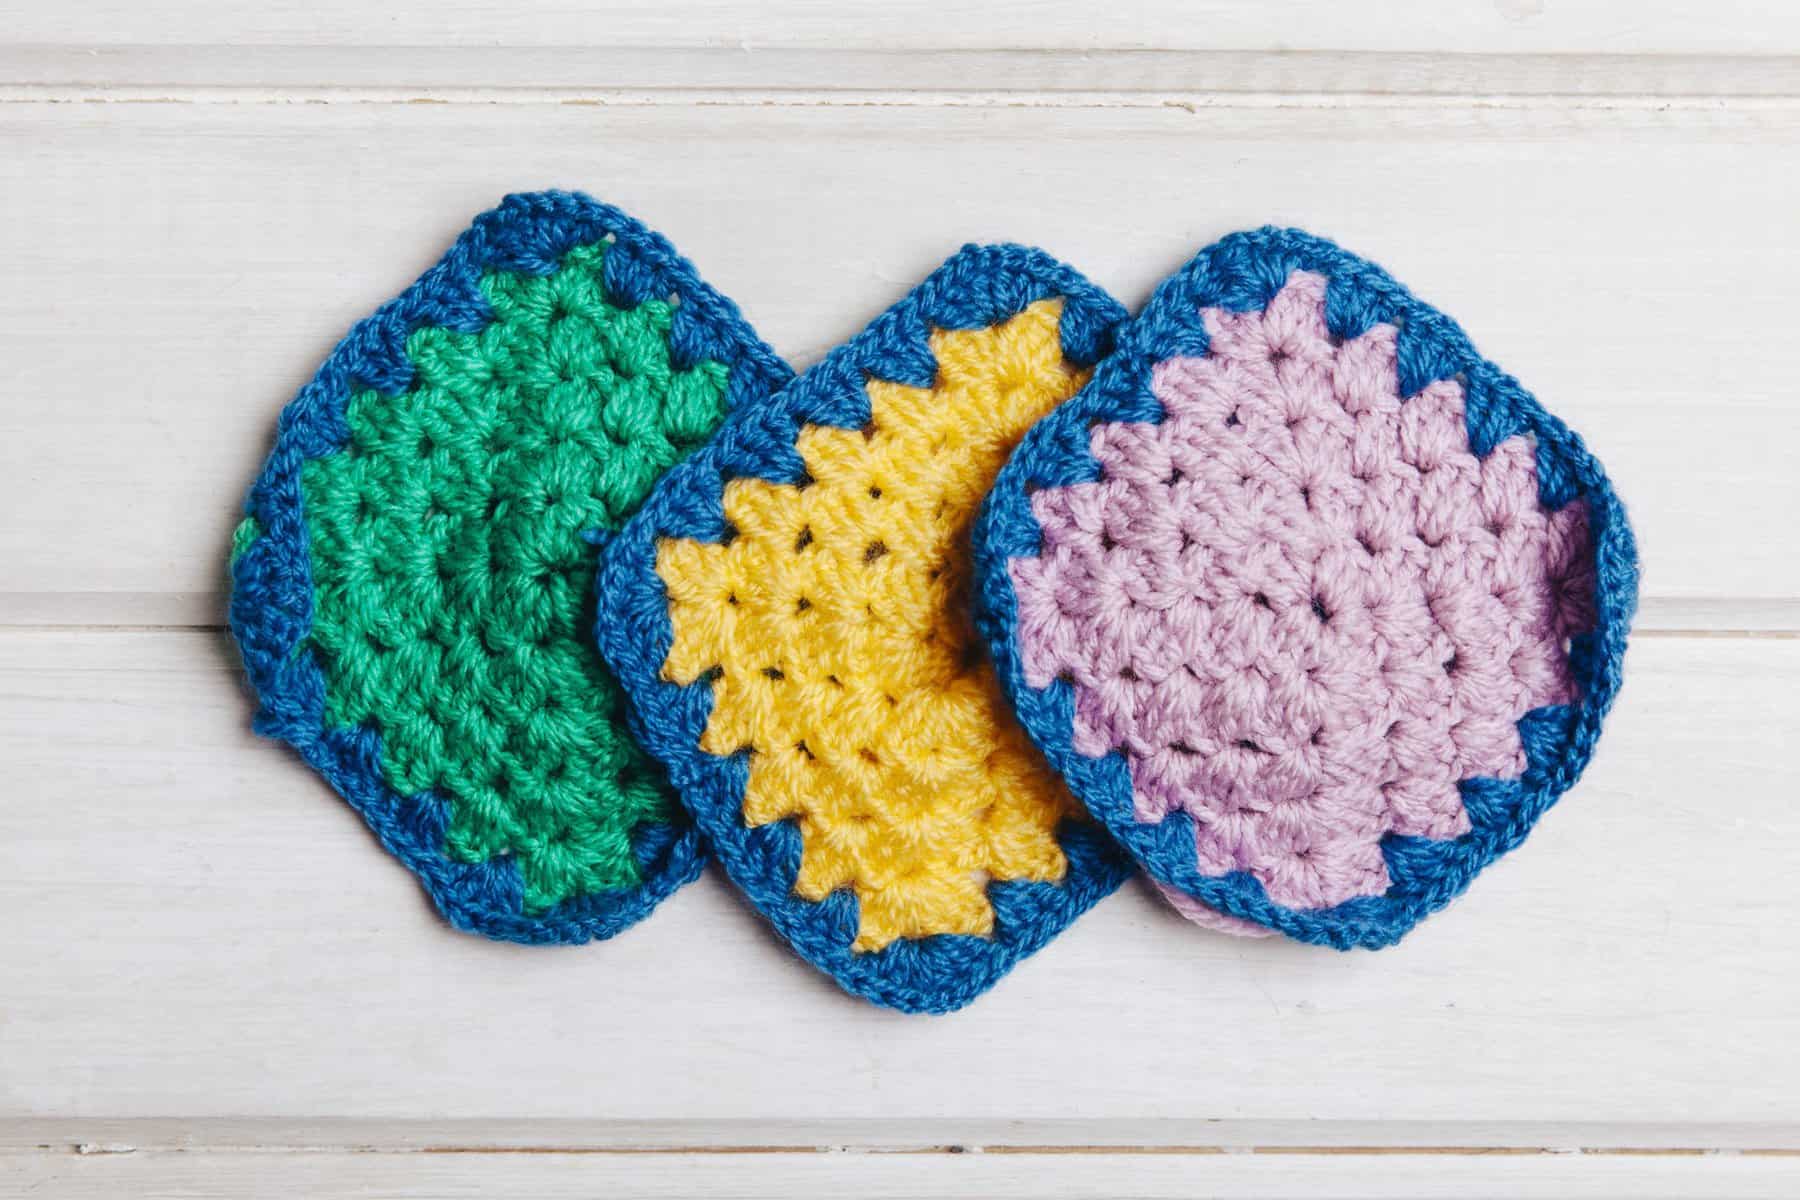 Crochet swatches